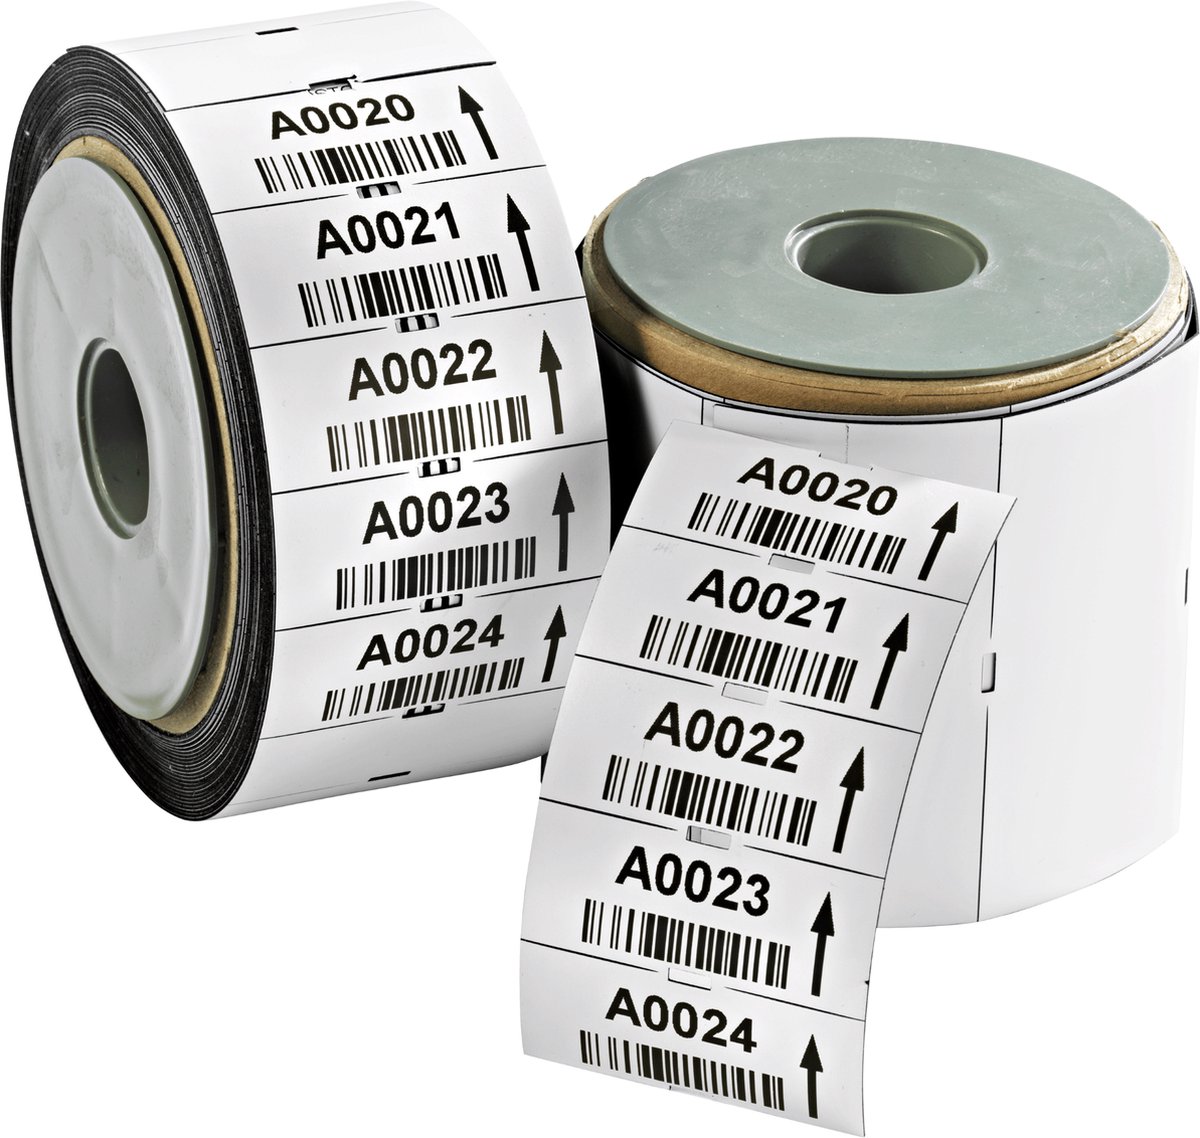 COROSTOC TT magnetische etiketten om zelf te bedrukken (300 st.: 100 x 50 mm / 15meter)